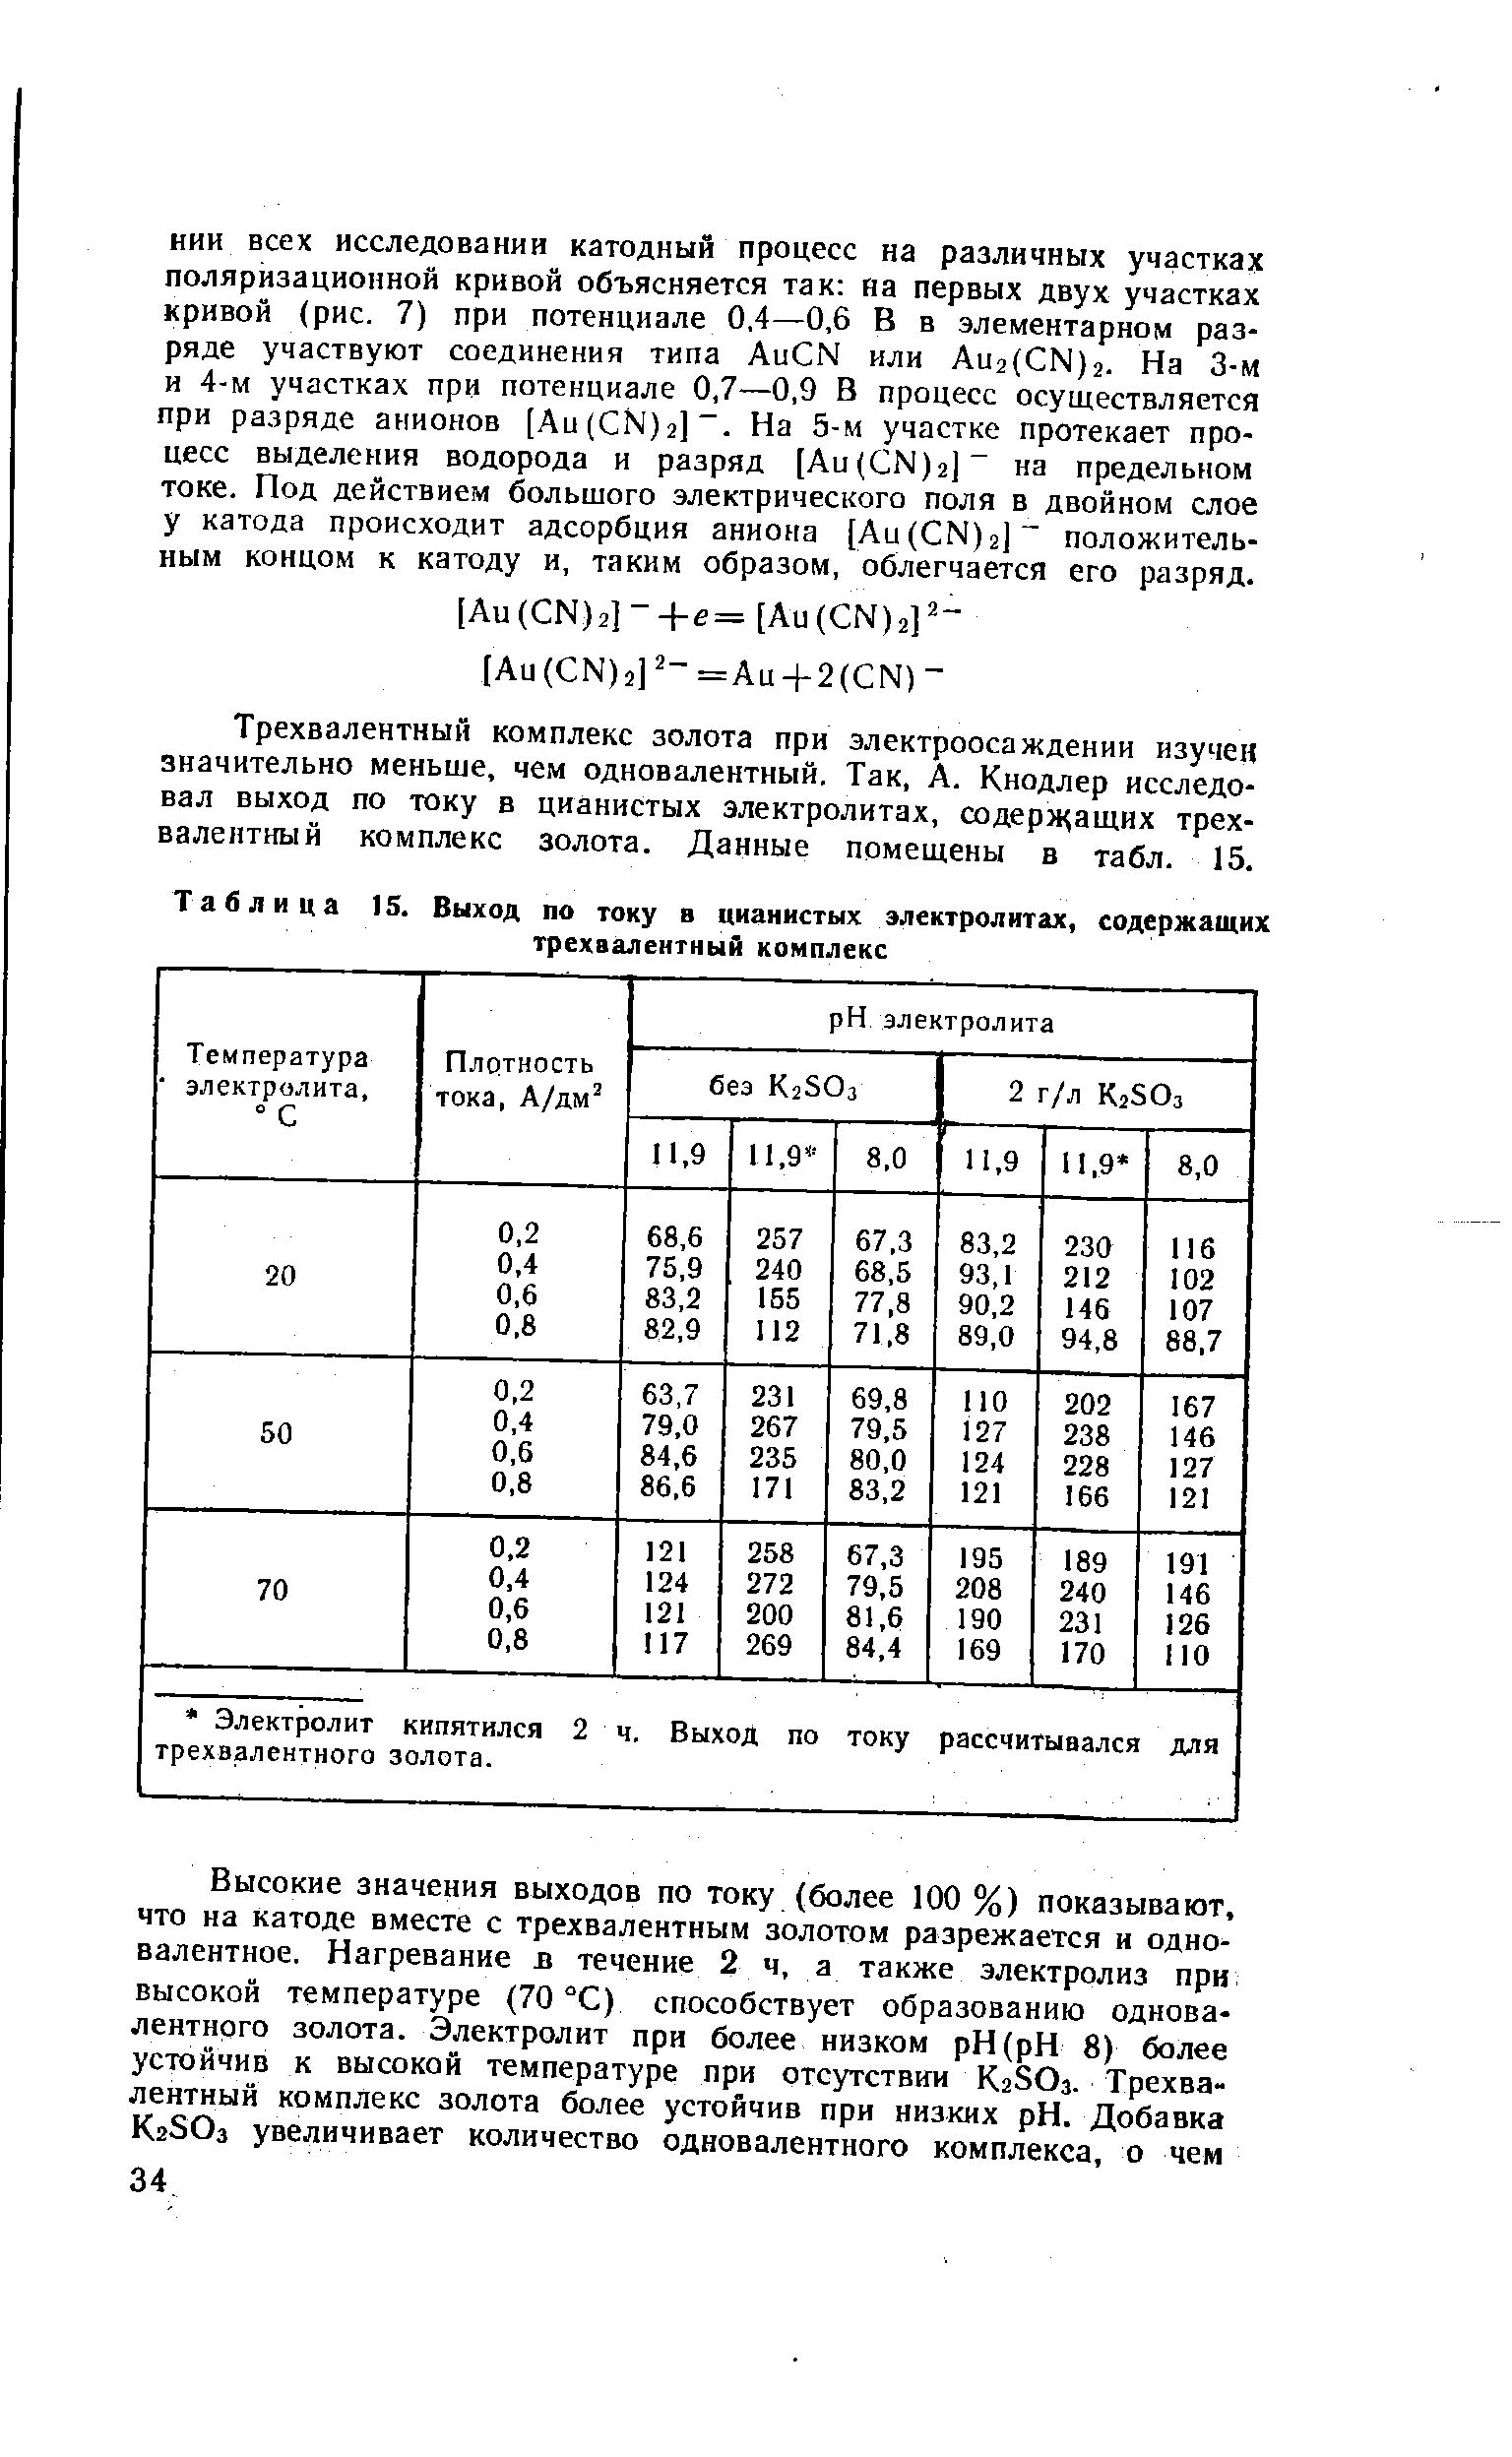 Таблица 15. Выход по току в цианистых электролитах, содержащих трехаалеитный комплекс
